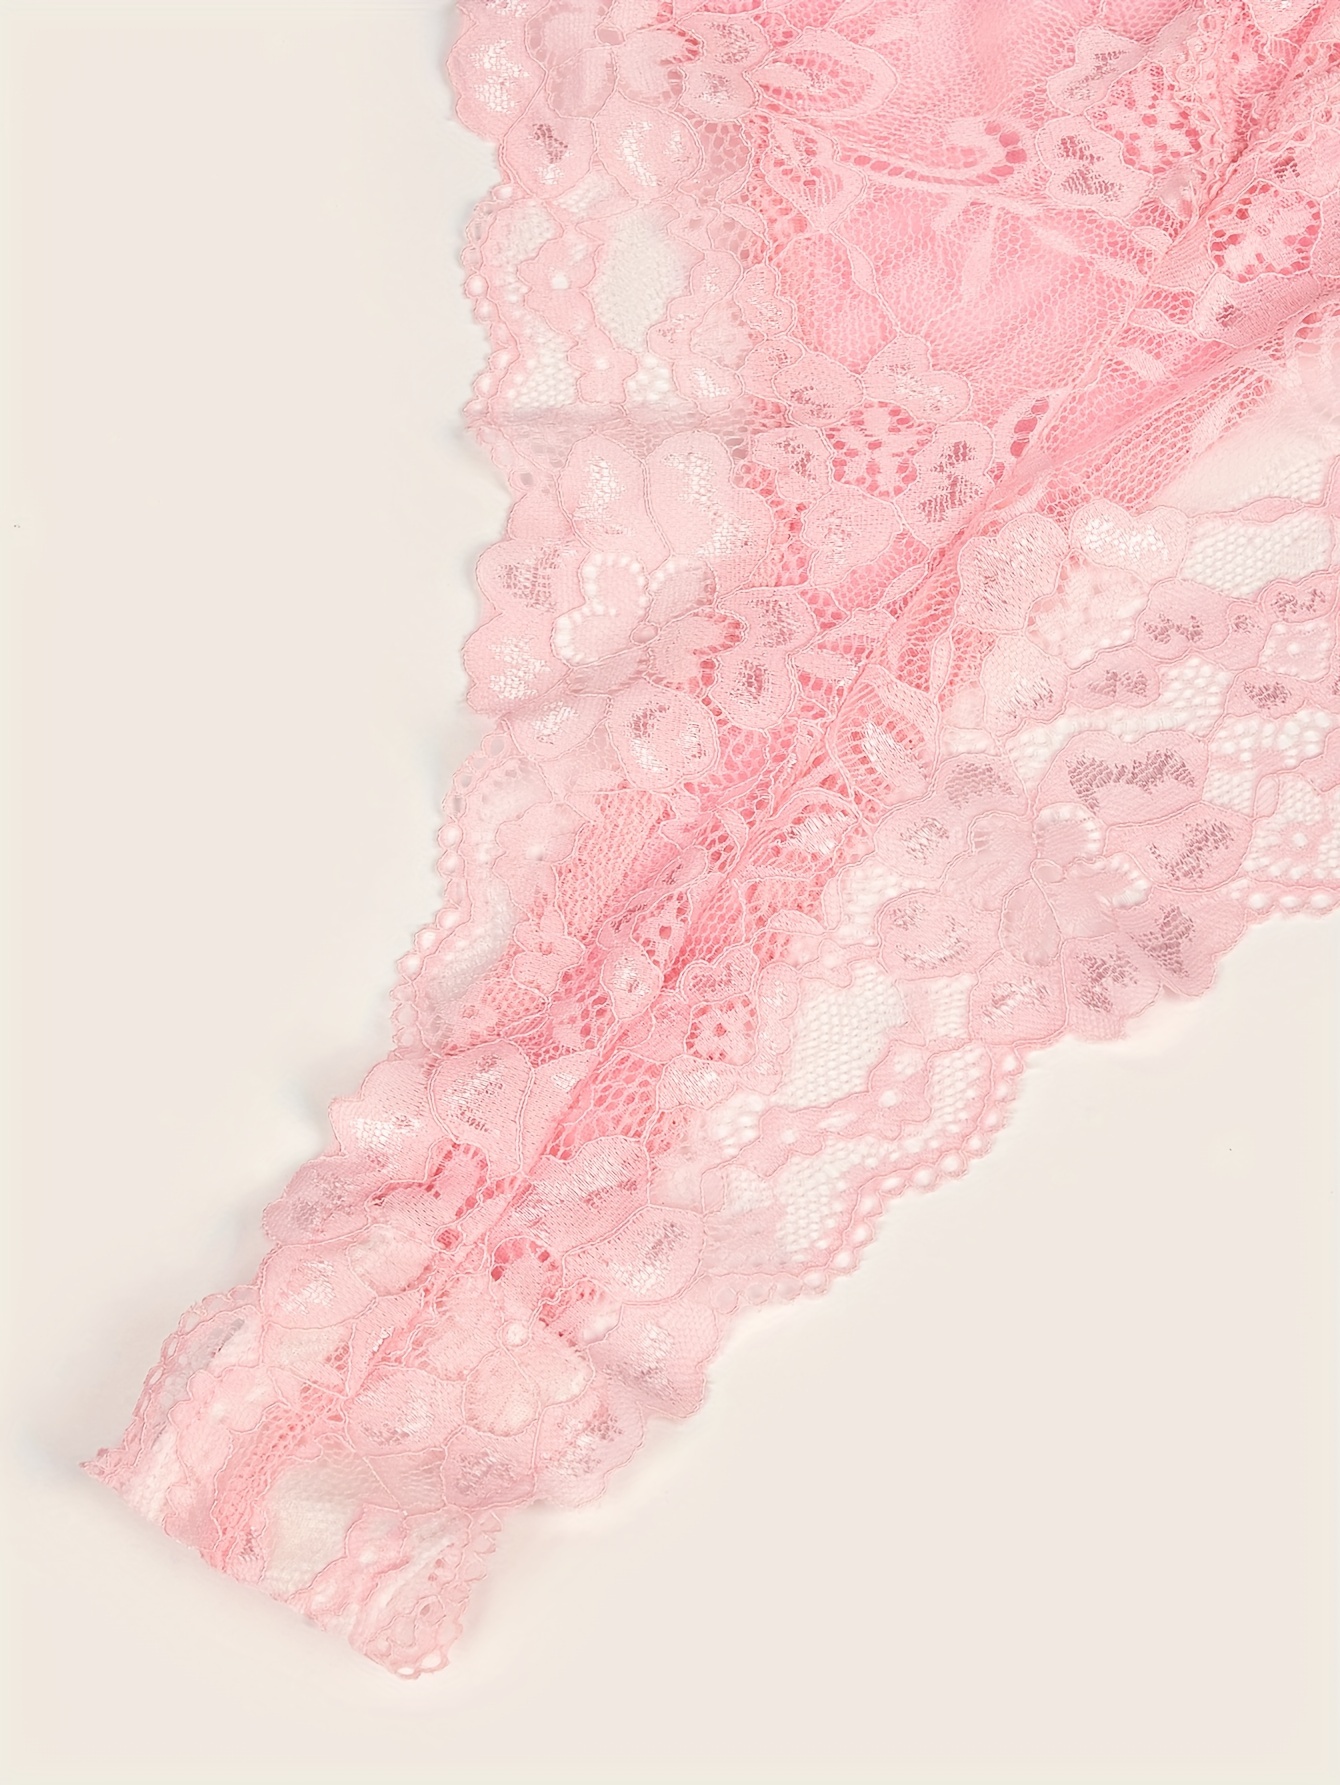 Dangent transparent lace - pink, Laelki, light beige Fashion site